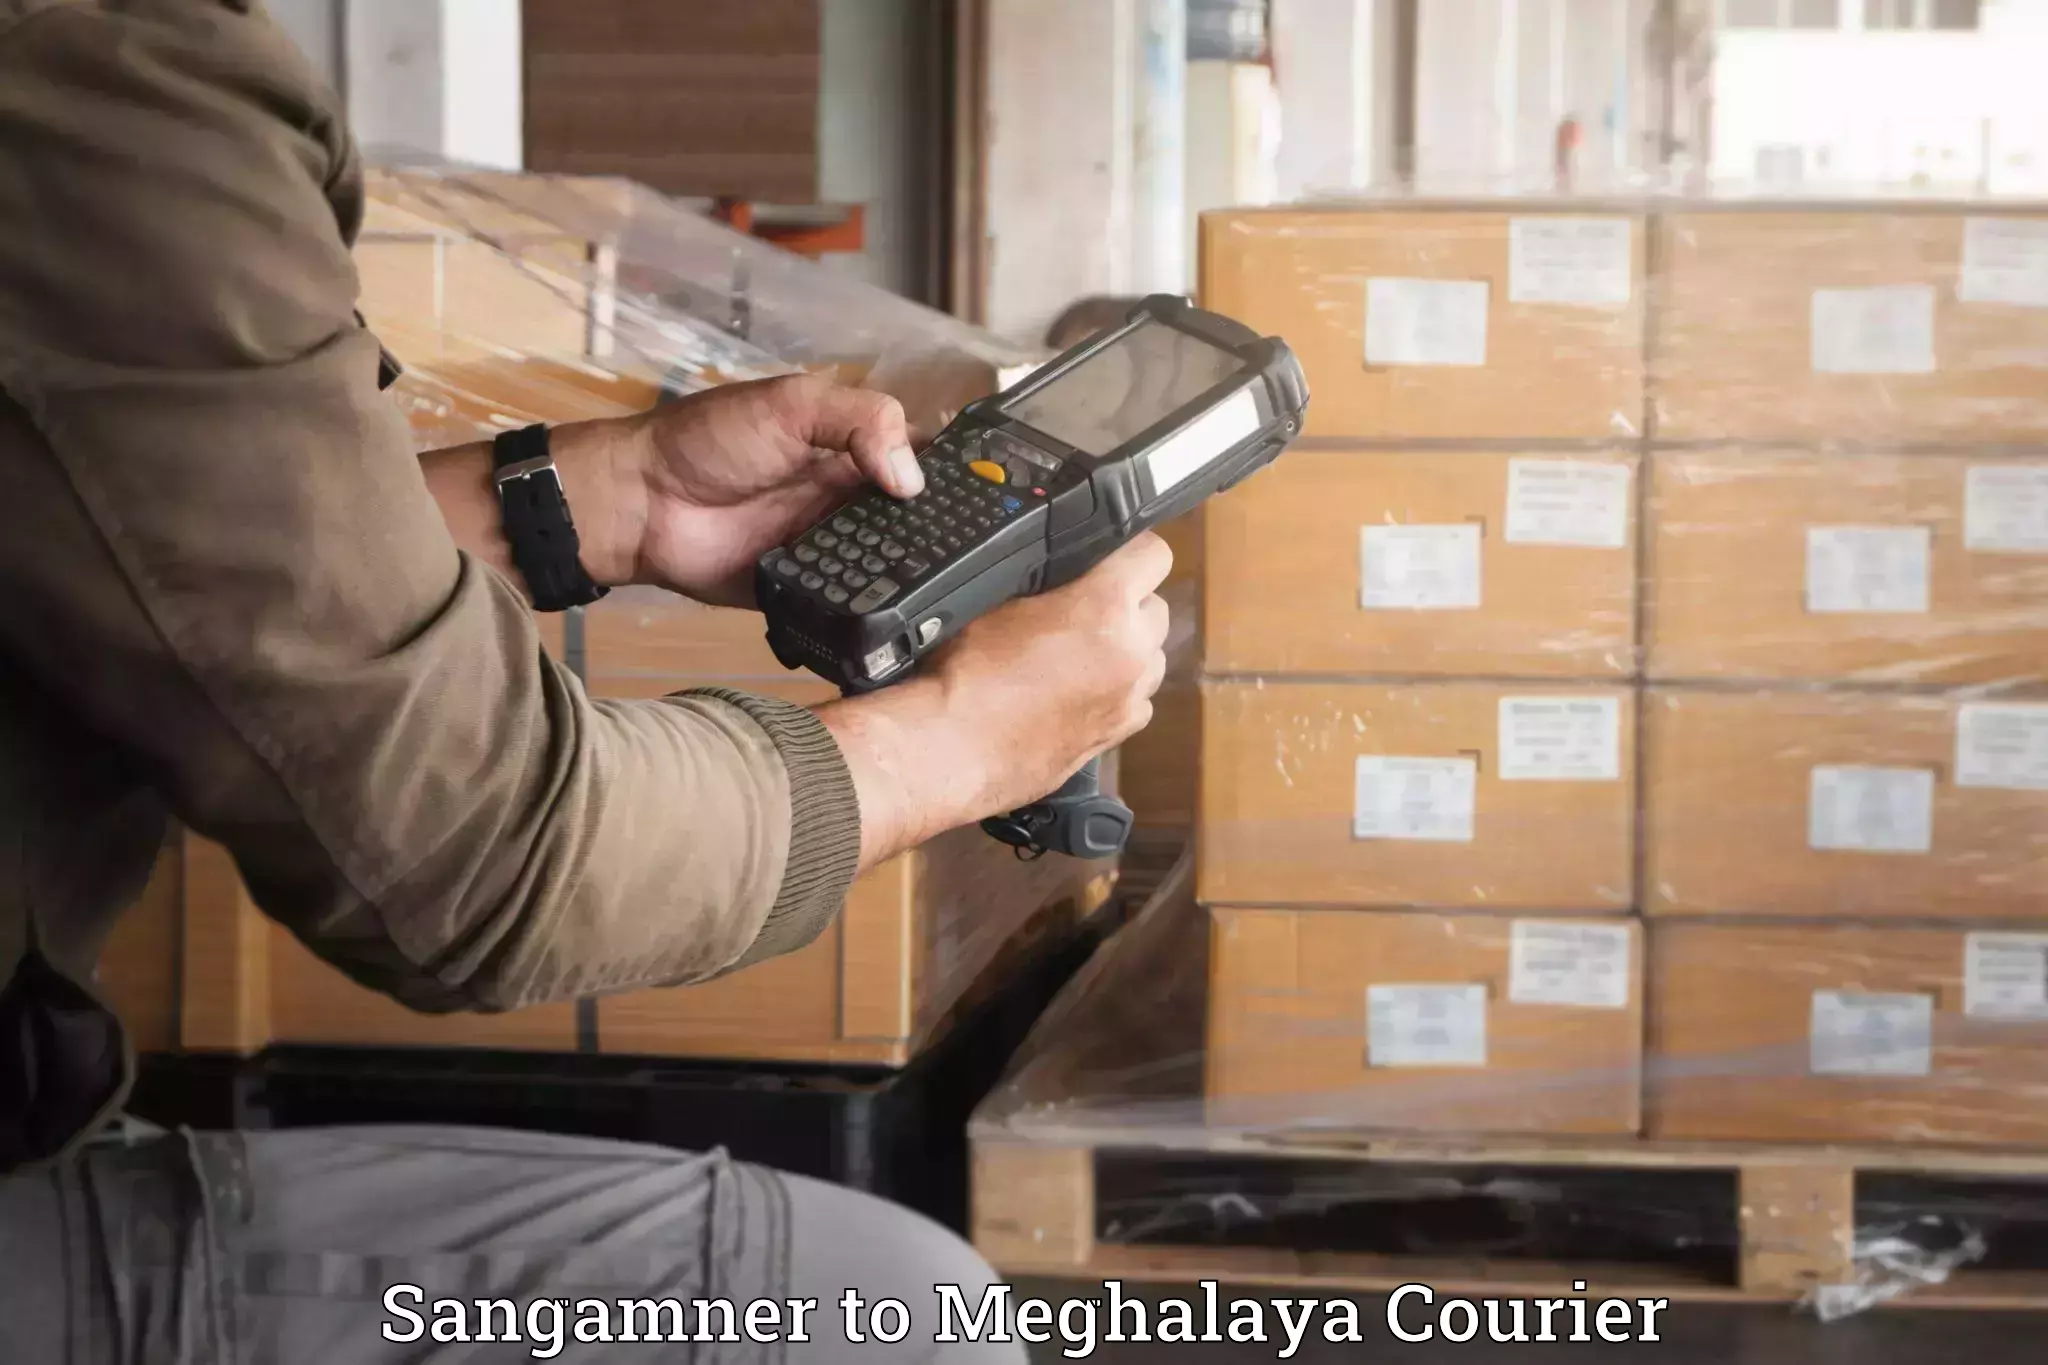 Luggage forwarding service Sangamner to Umsaw